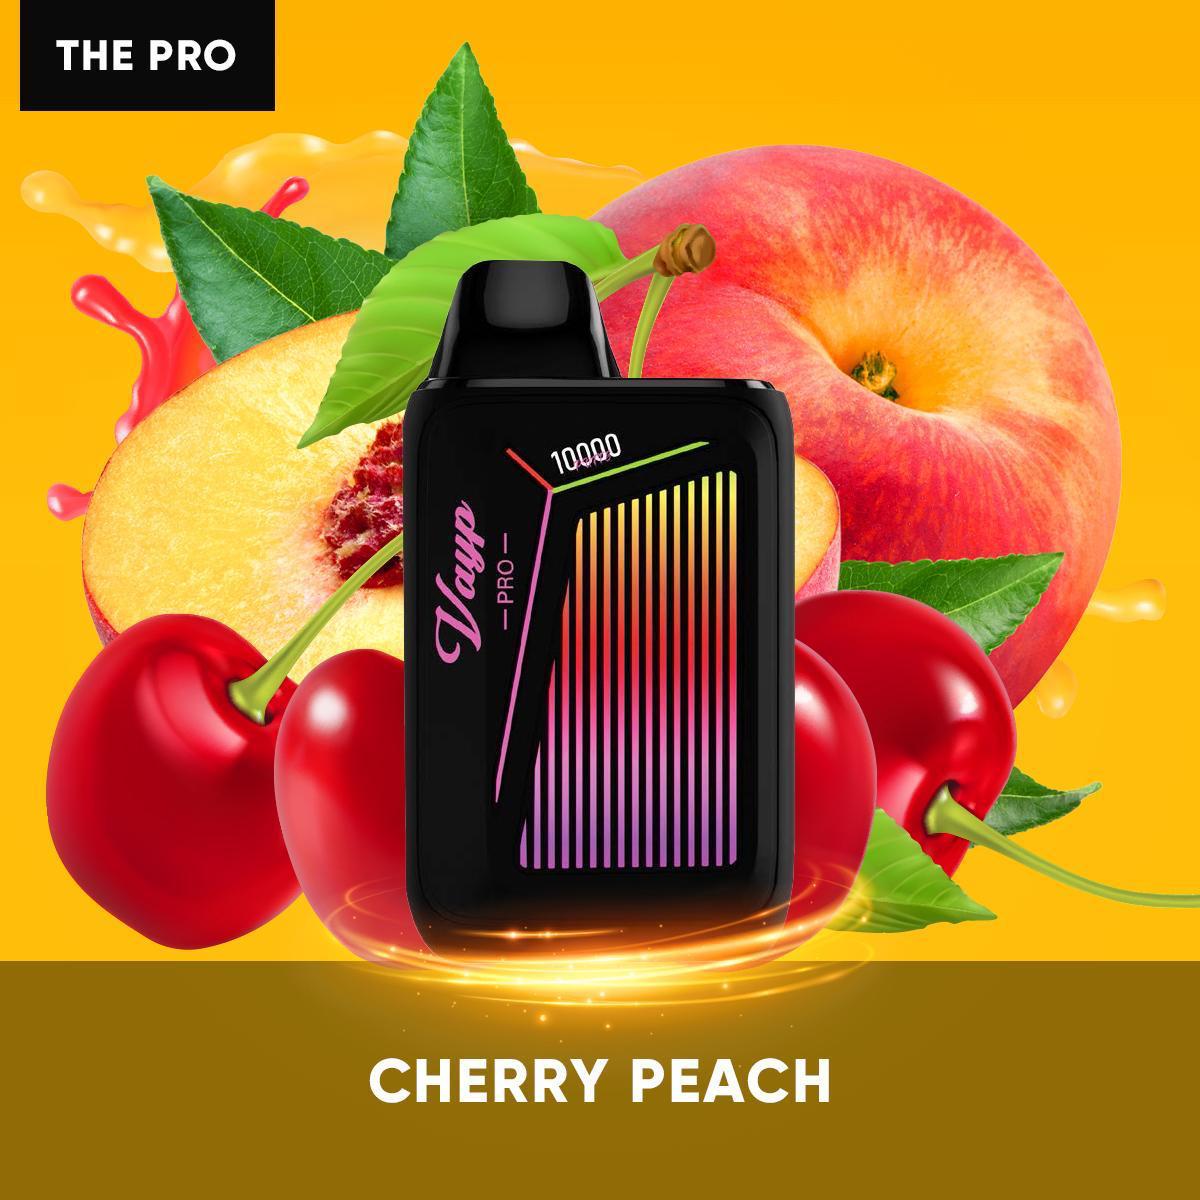 Vayp Pro Cherry Peach Lemon Flavor - Disposable Vape